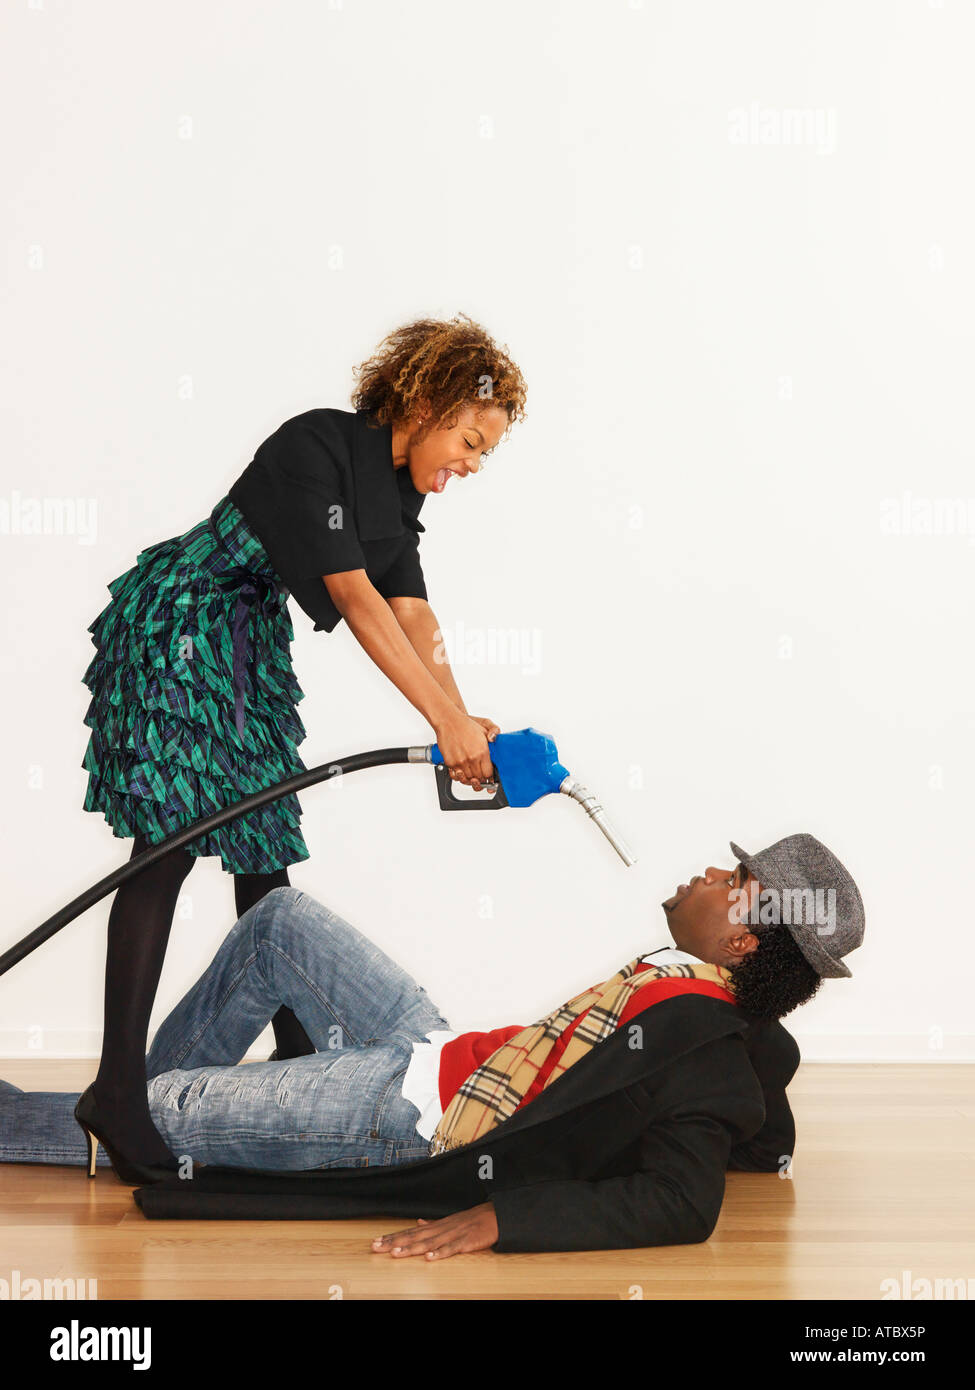 Mann am Boden mit böse Frau, die über ihn Benzin-Pumpe-Düse auf ihn zeigt, wie eine Waffe Stockfoto